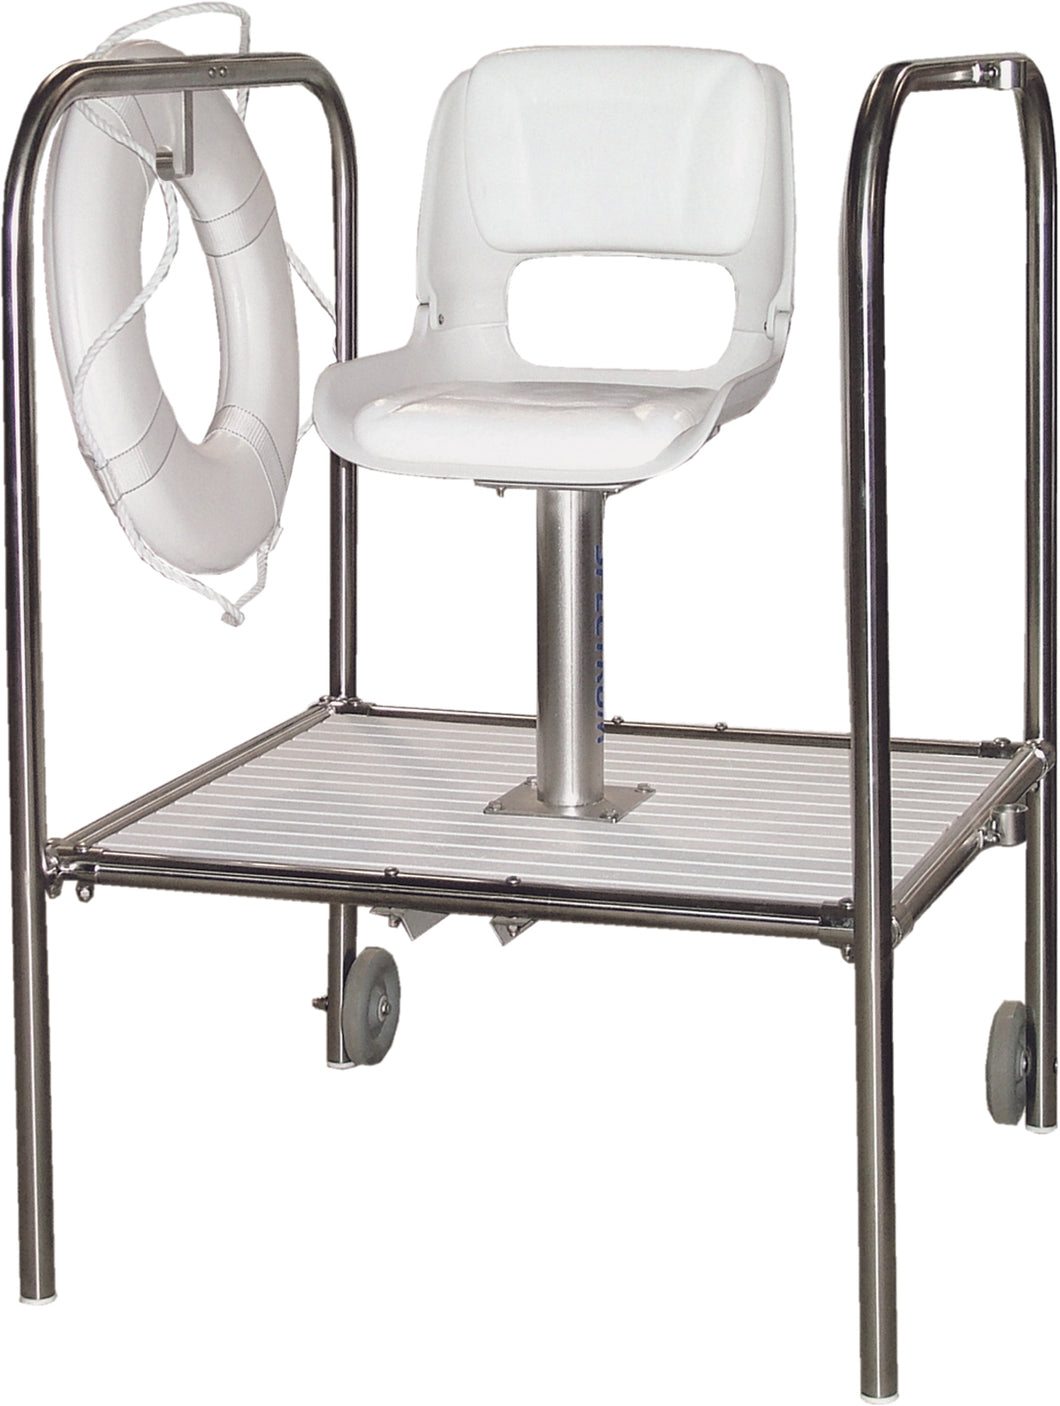 Torrey Lifeguard Chair